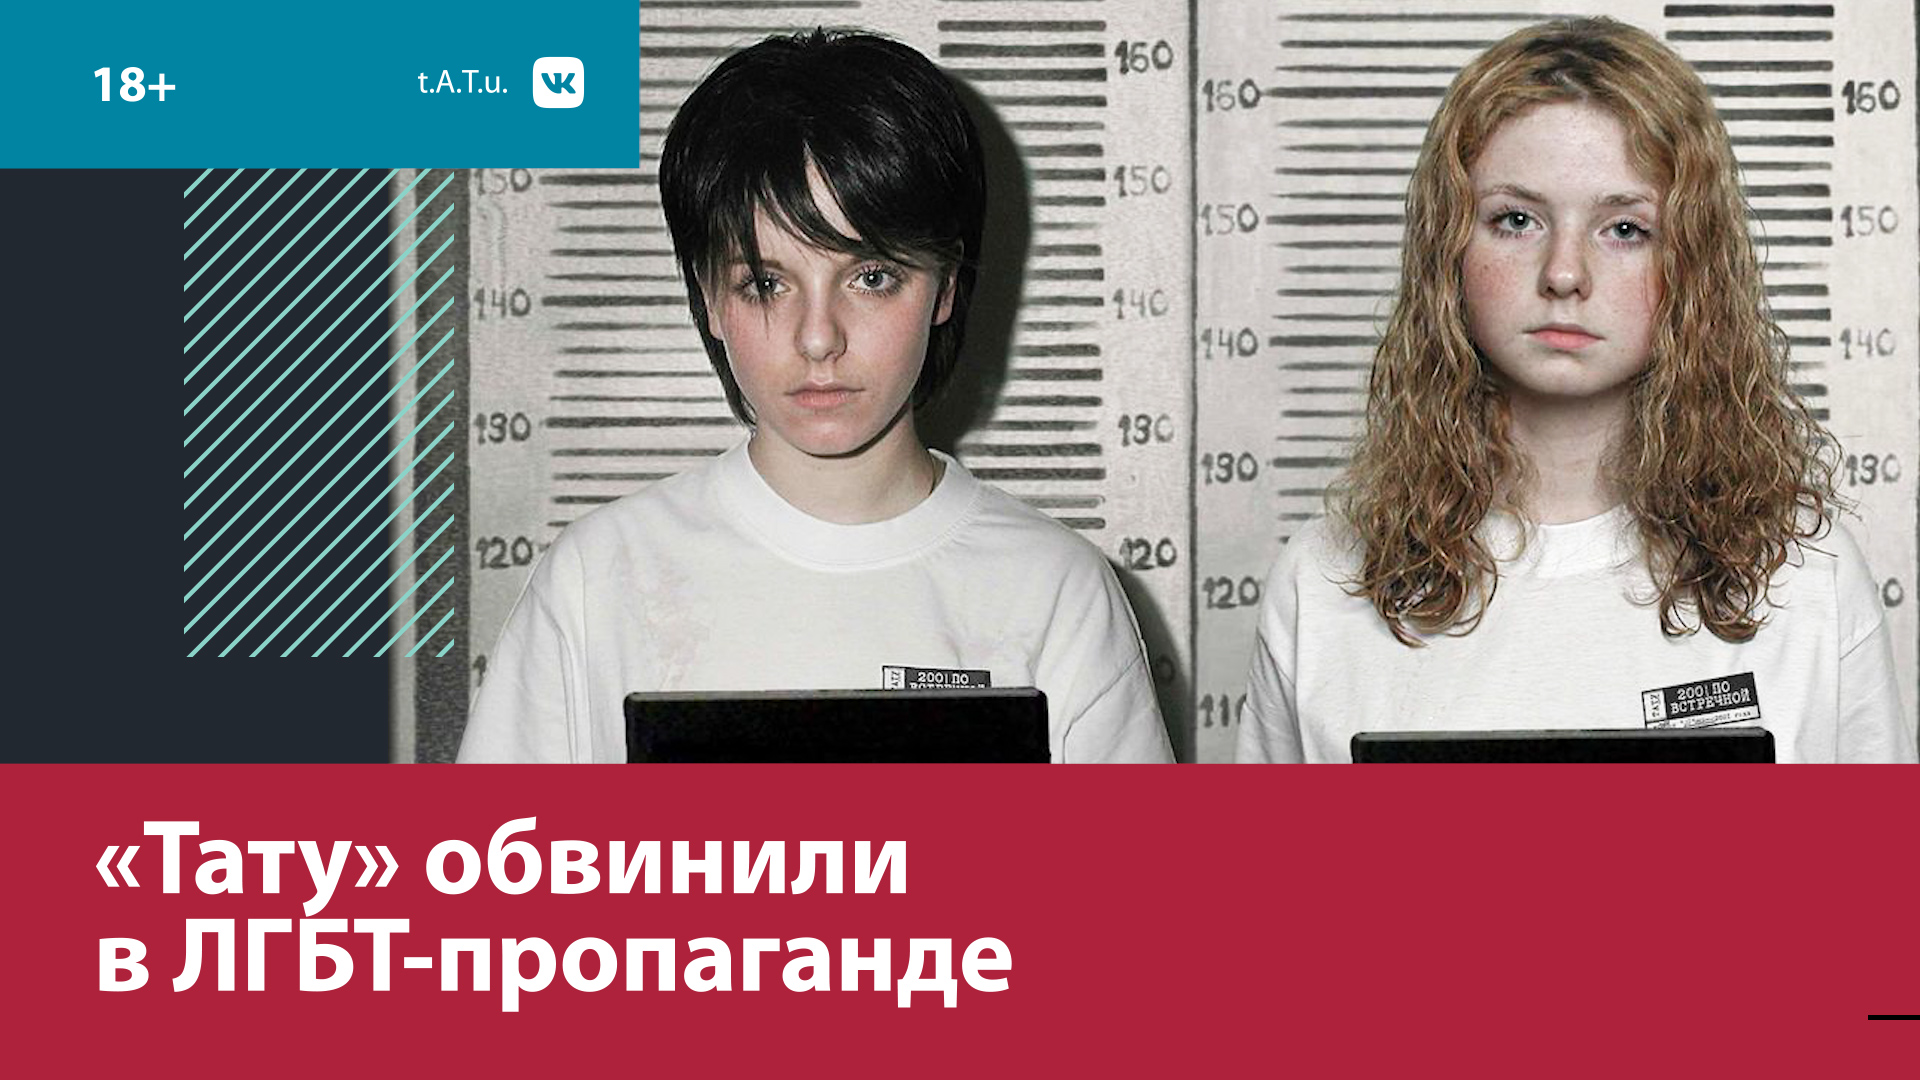 ЛГБТ-пропаганда началась с группы "Тату"? — Москва FM